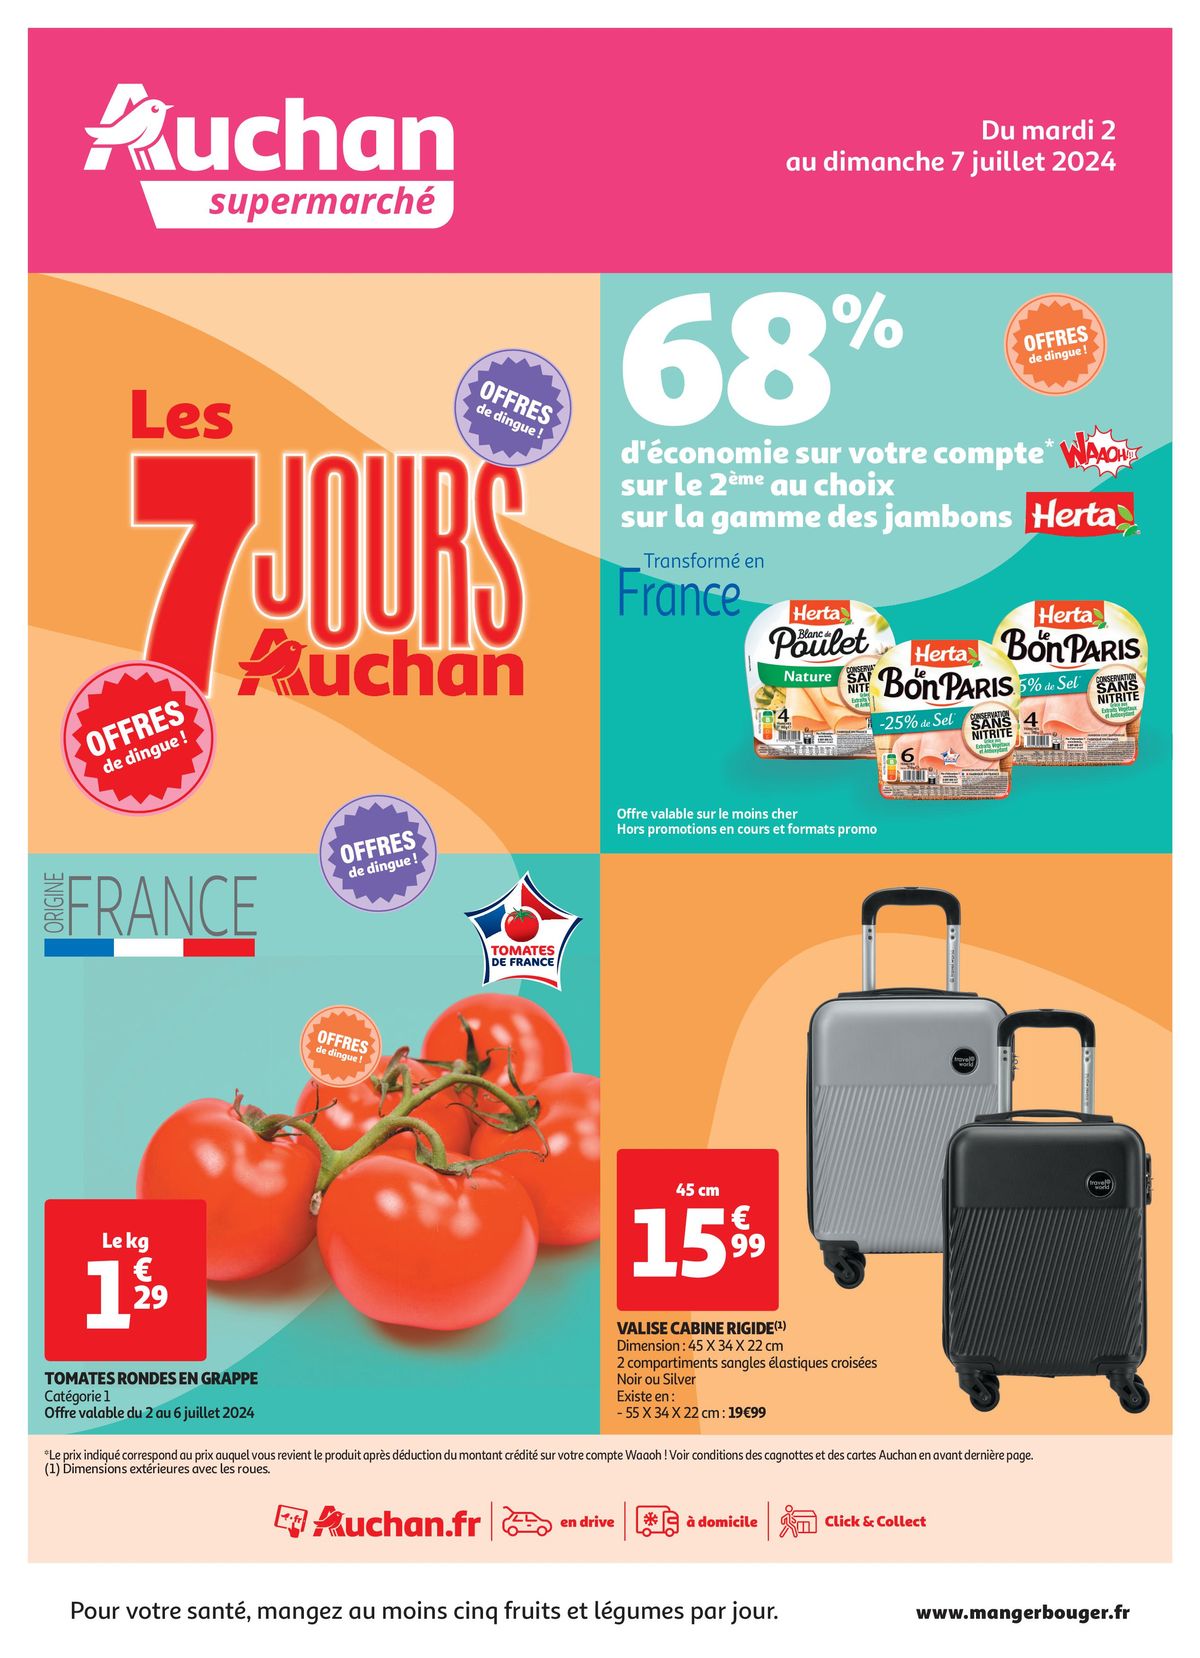 Catalogue C'est les 7 jours Auchan dans votre super !, page 00001